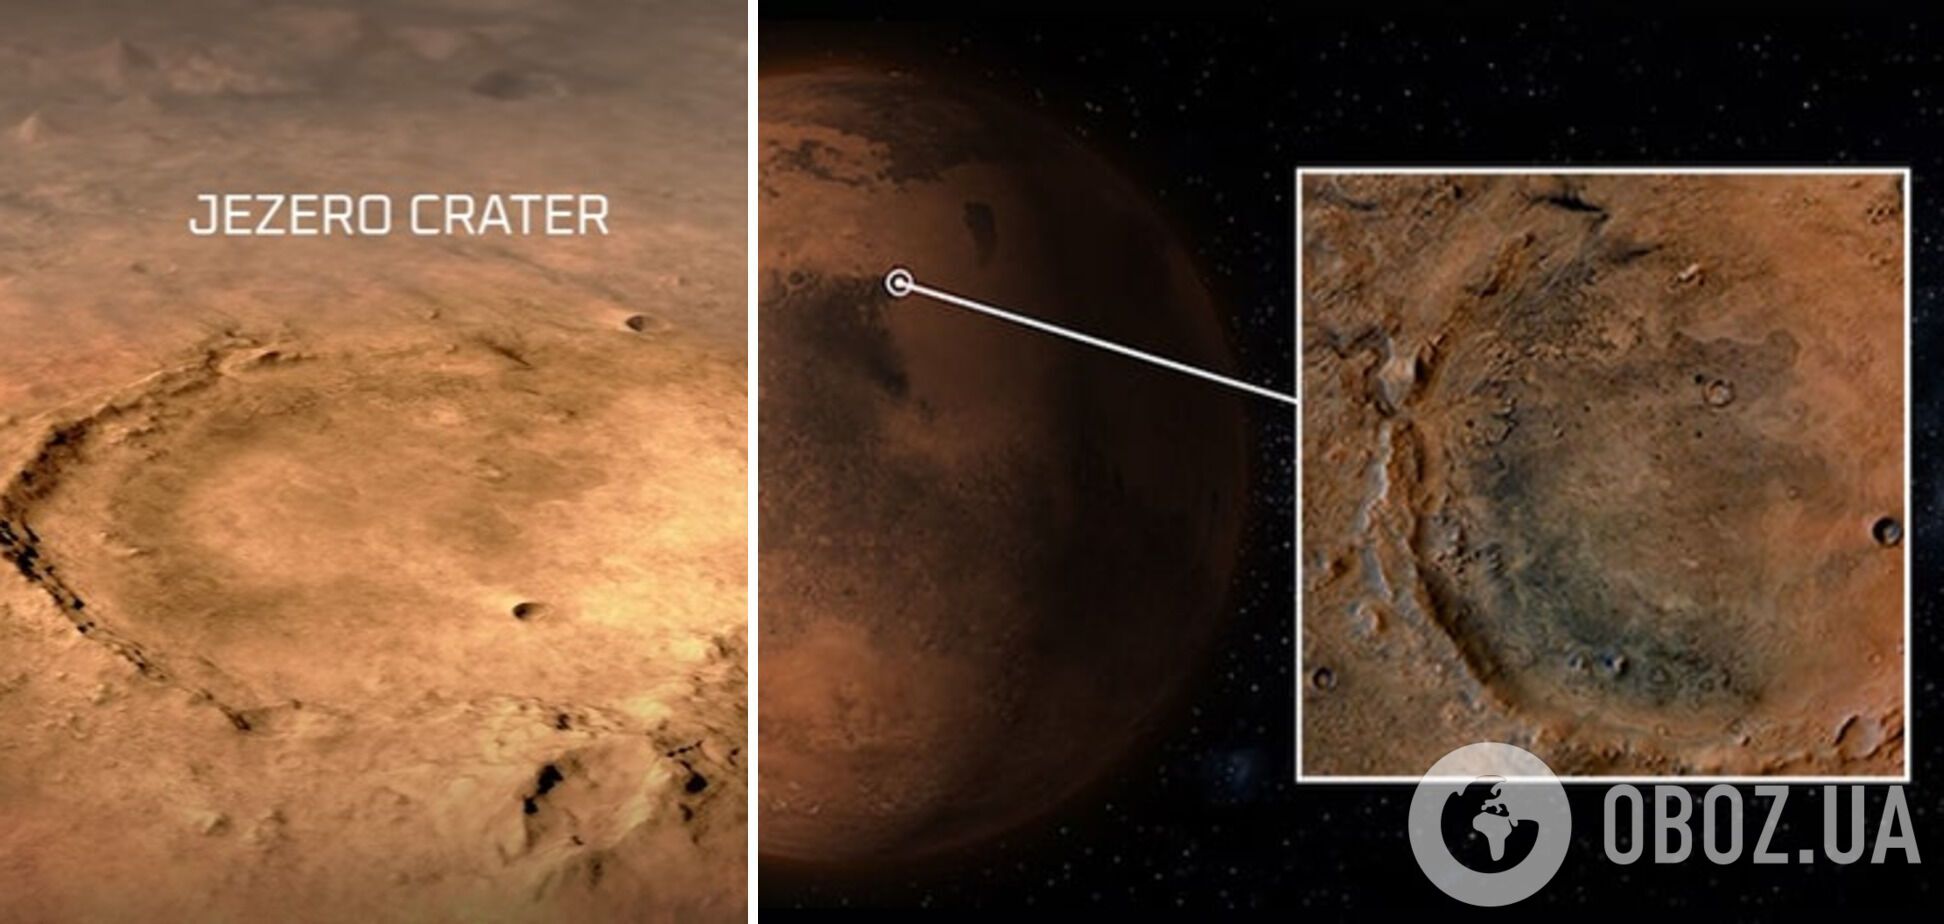 Кратер Езеро на Марсе.